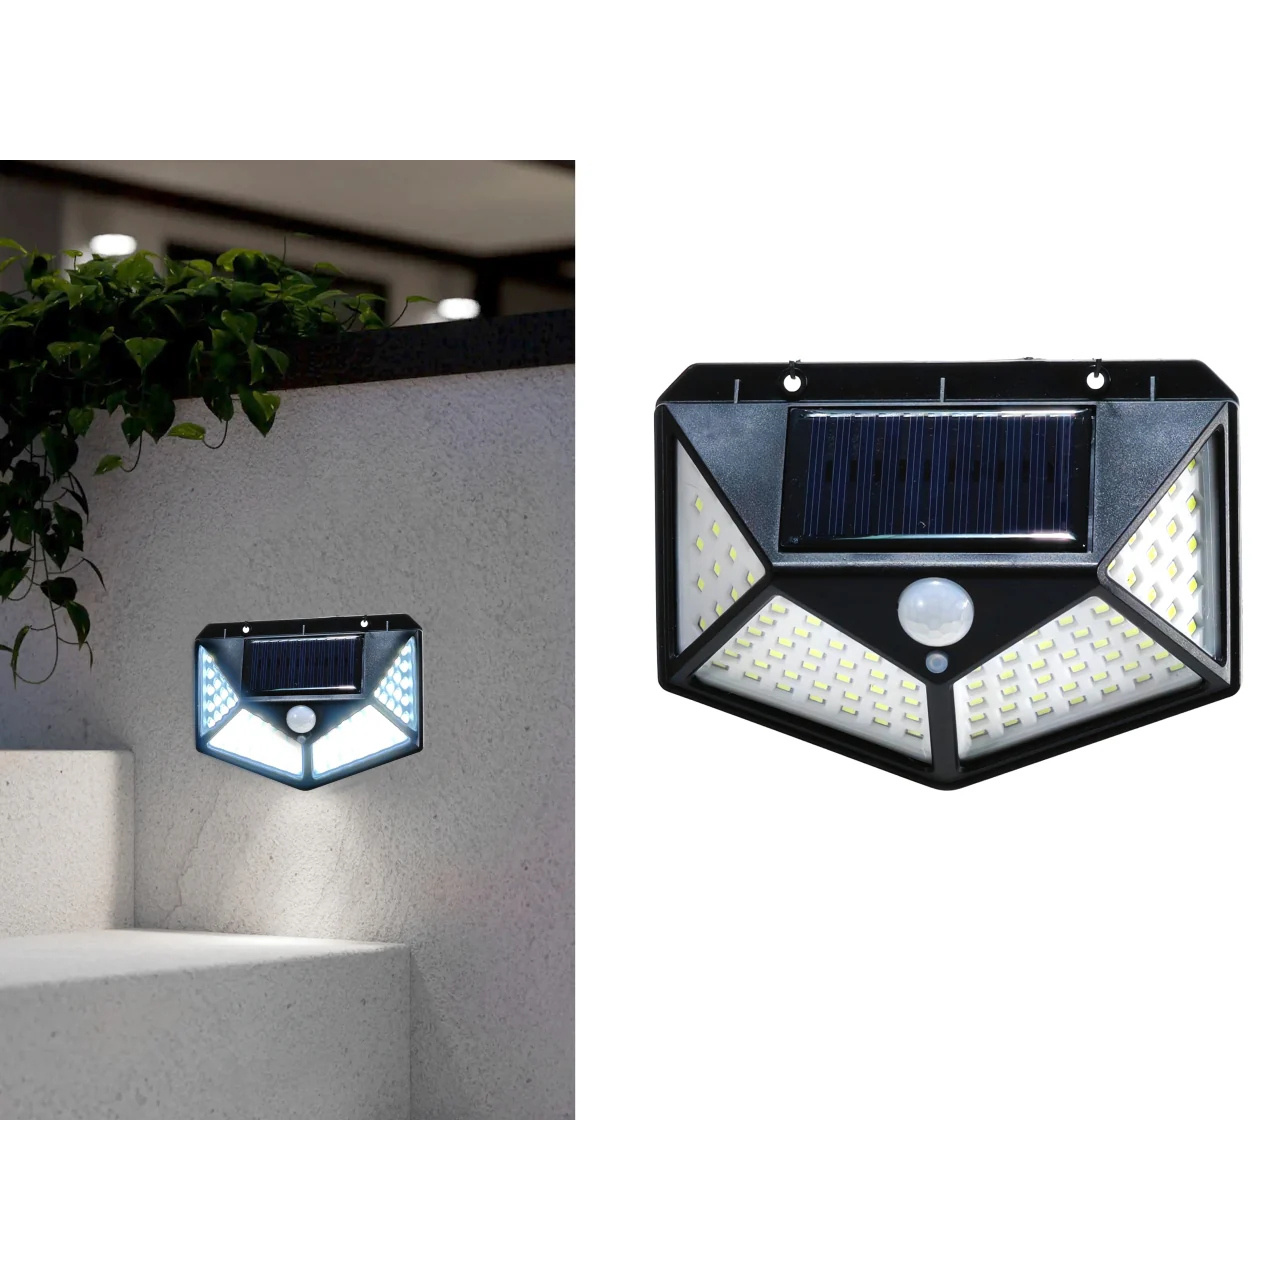 Φωτιστικό Τοίχου LED Ηλιακό Με Αισθητήρα Κίνησης 200lm Μαύρο Πλαστικό 14x10x5cm